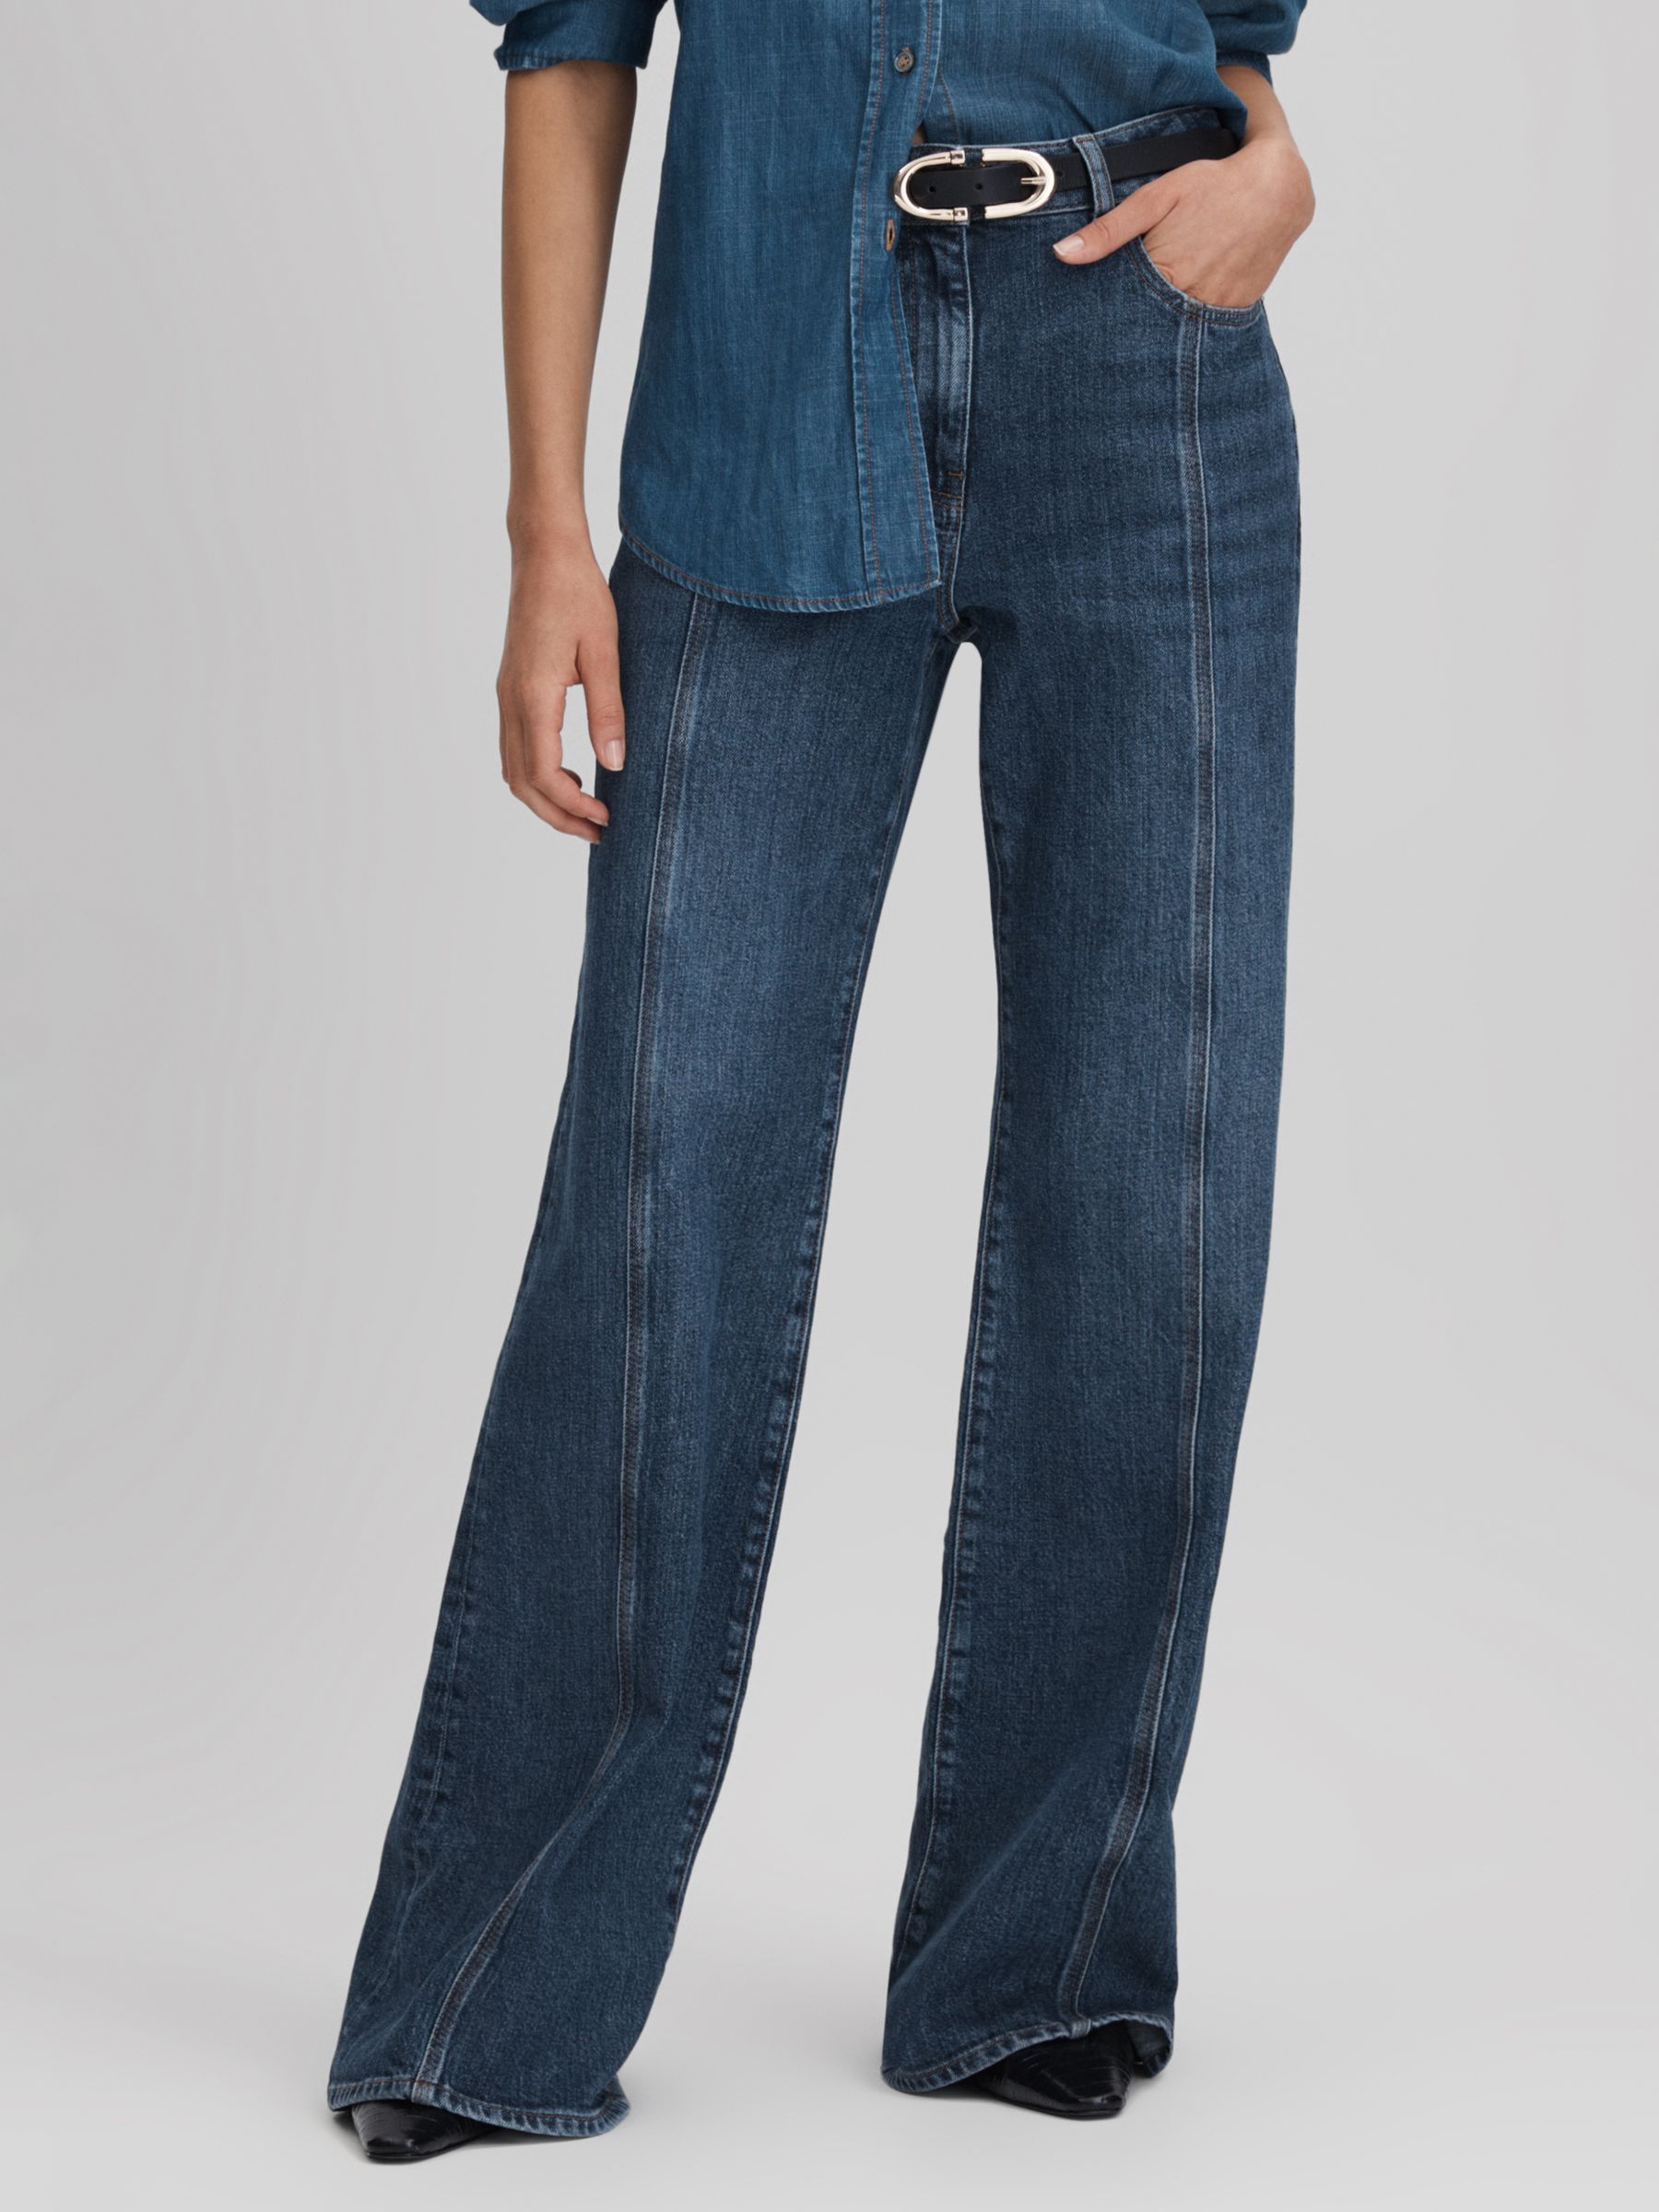 Расклешенные джинсы Juniper Reiss, средний синий стеганая куртка средней длины topshop с расклешенным краем и капюшоном